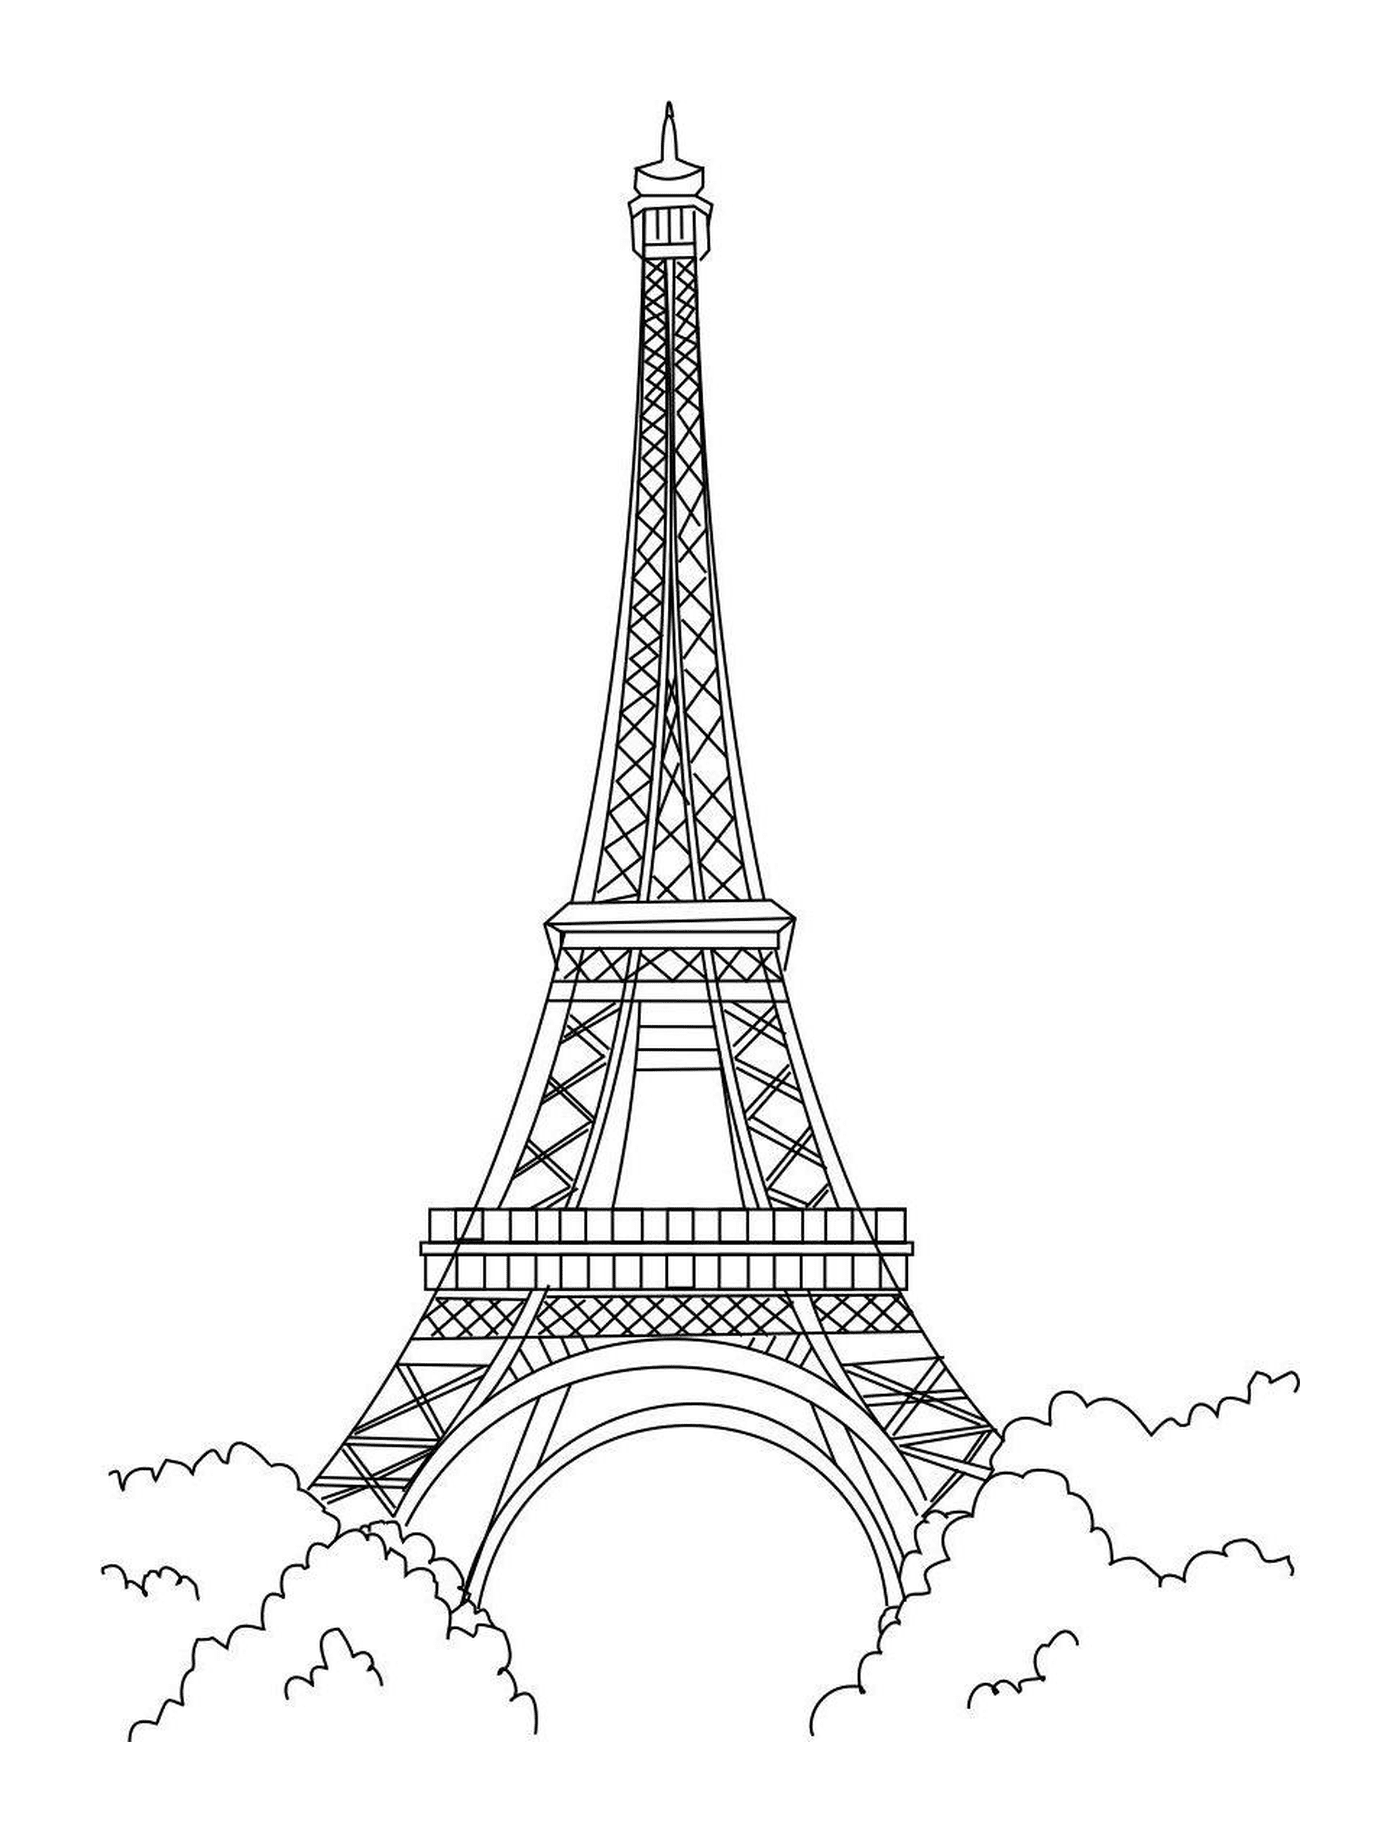  एफ़ल टॉवर, पेरिसियन स्मारक 